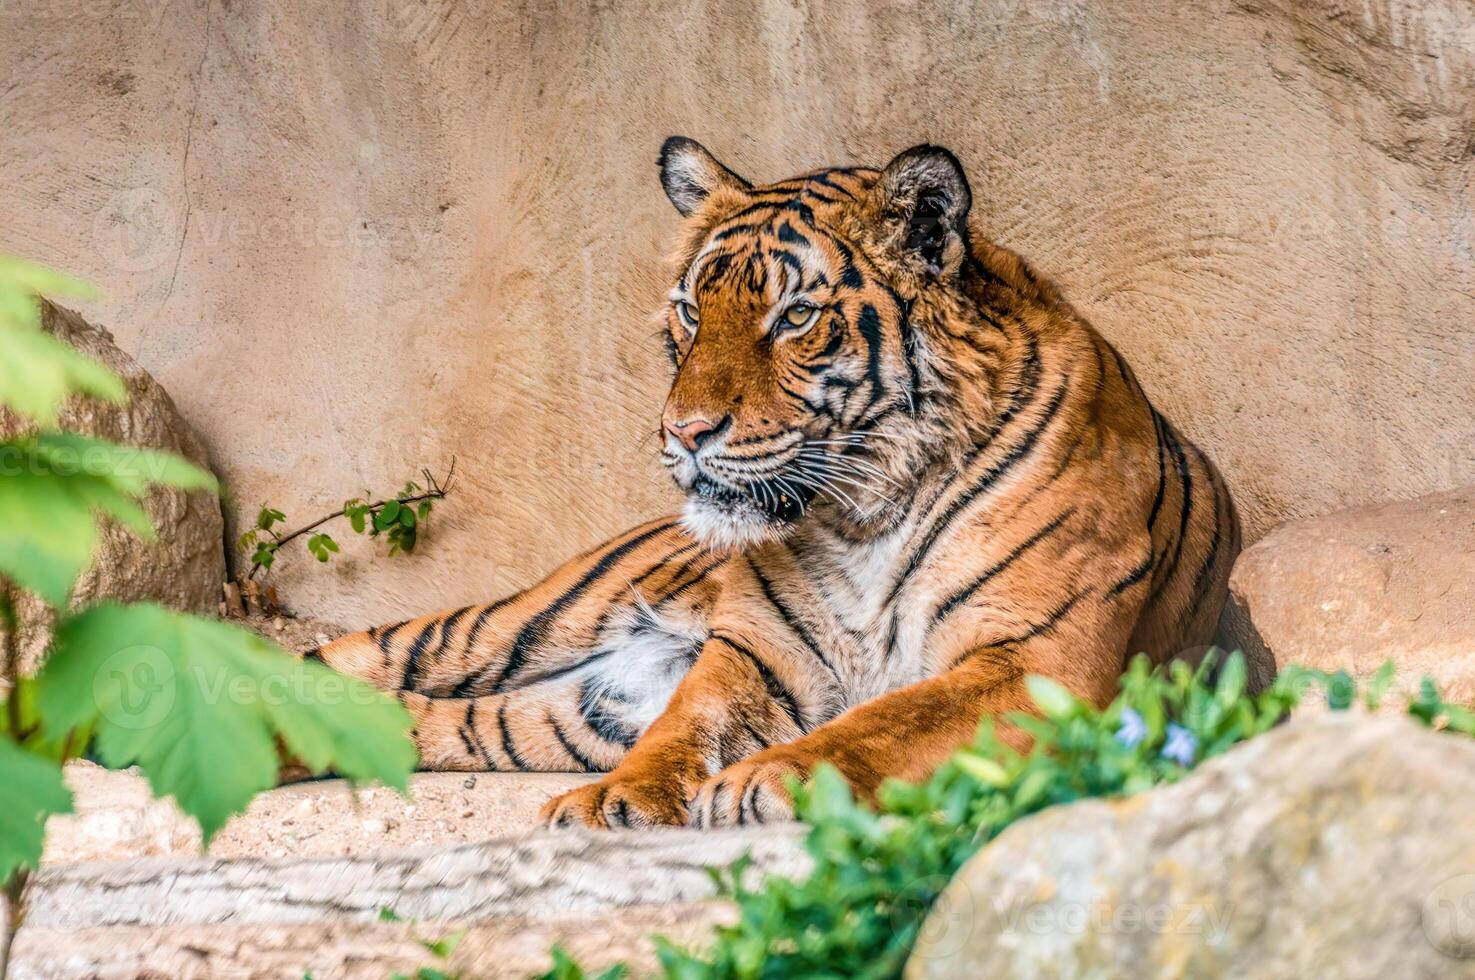 uno bello giovane tigre è dire bugie in giro e rilassante foto